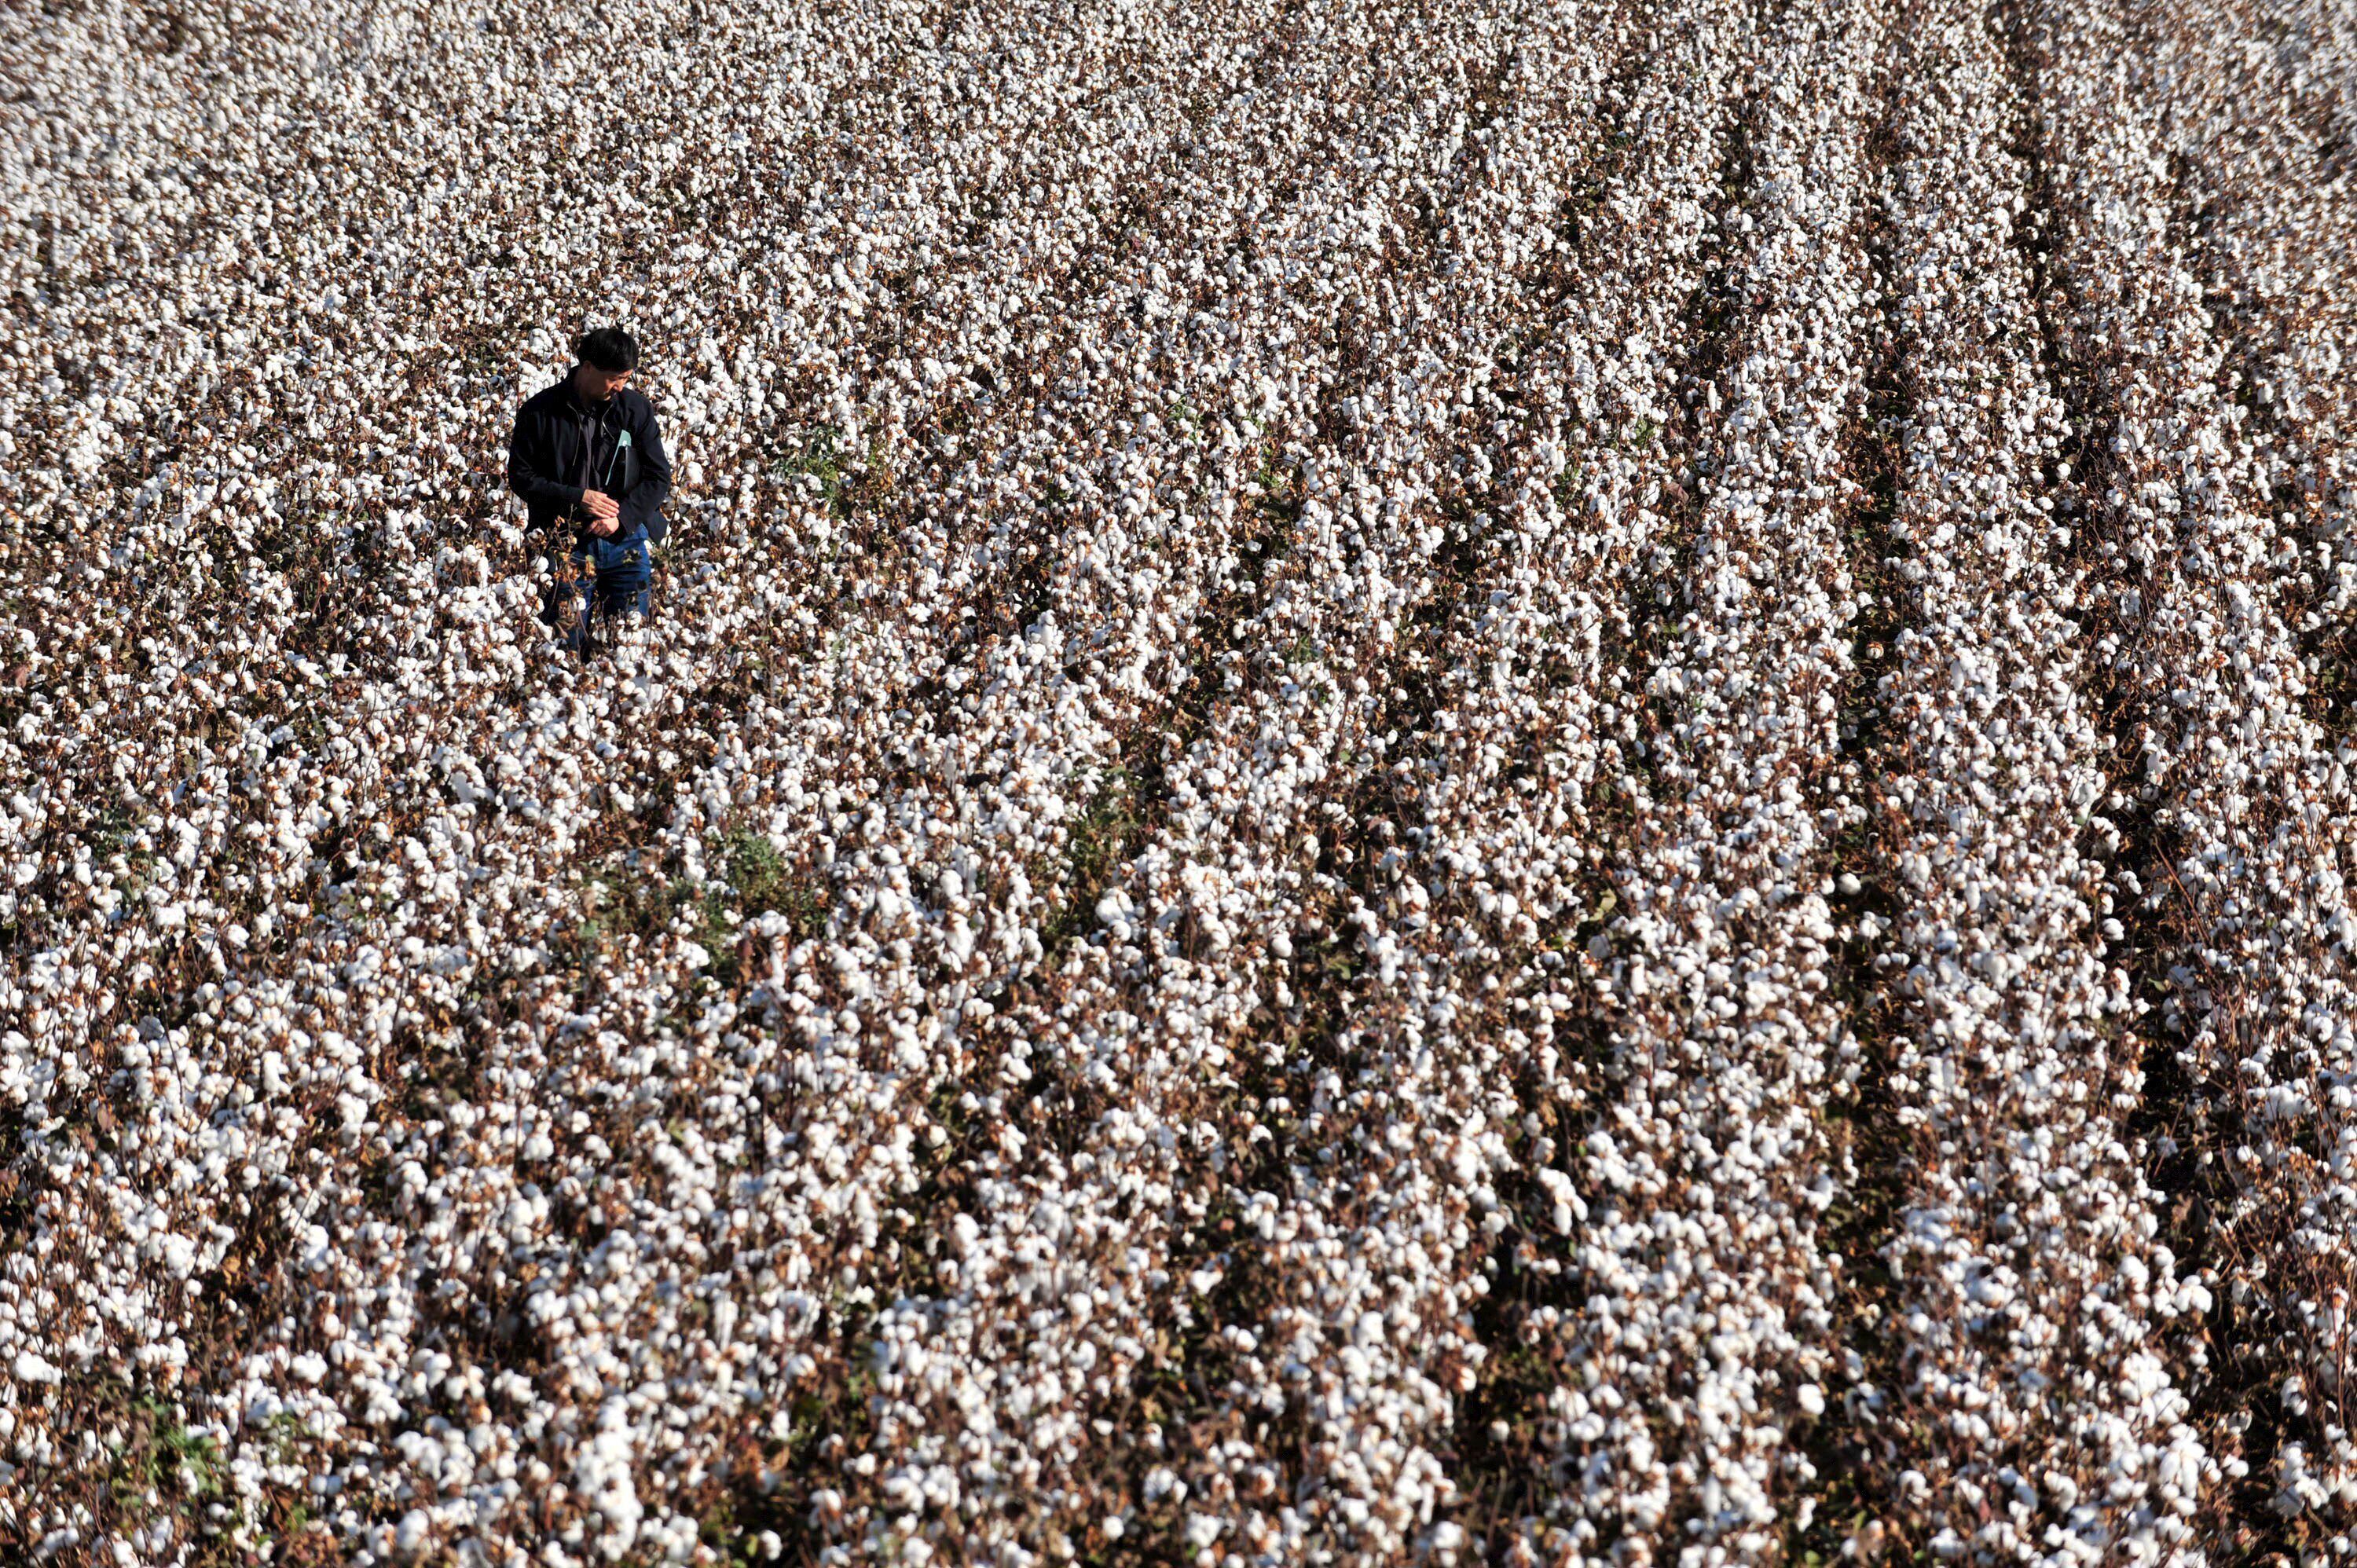 La crisis del algodón afecta las economías del noreste argentino EFE/ZHOU CHAO/Archivo
